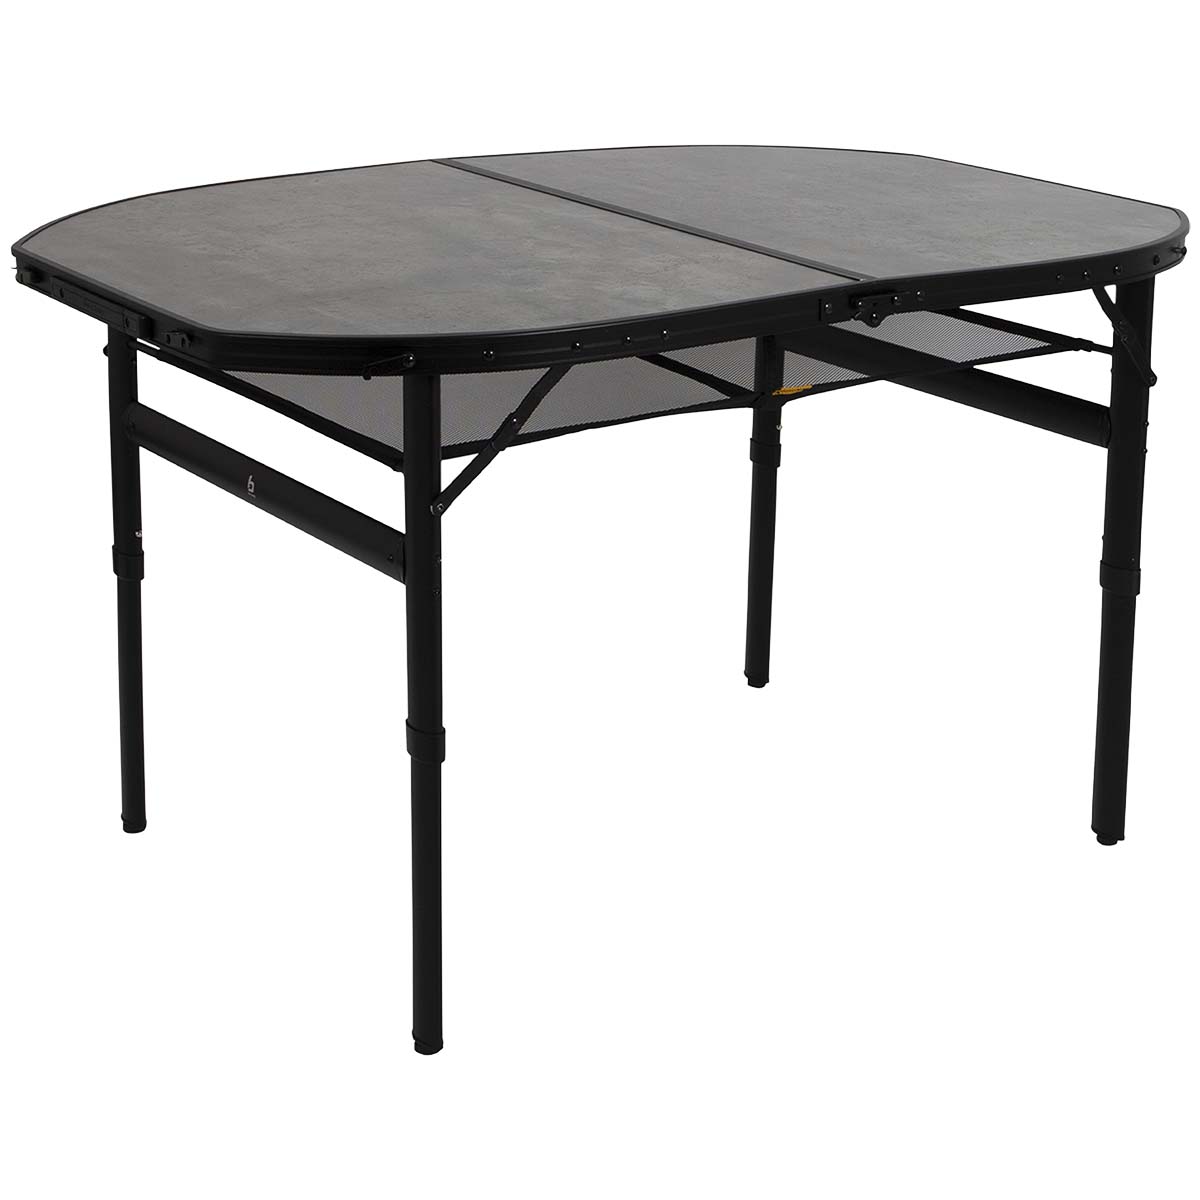 1404187 Een stijlvolle ovale aluminium tafel met een industriële uitstraling en betonlook tafelblad. Door middel van stelschroeven zijn de tafelpoten af te stellen op een ongelijke ondergrond. Daarnaast is de tafel zeer compact als koffermodel op te bergen door de afneembare poten en een deelbaar blad. Bovendien is de tafel voorzien van een net onder het MDF tafelblad om spullen in op te bergen, en een handgreep waardoor de tafel gemakkelijk is mee te nemen. De tafel is in hoogte verstelbaar: 36/70 cm.